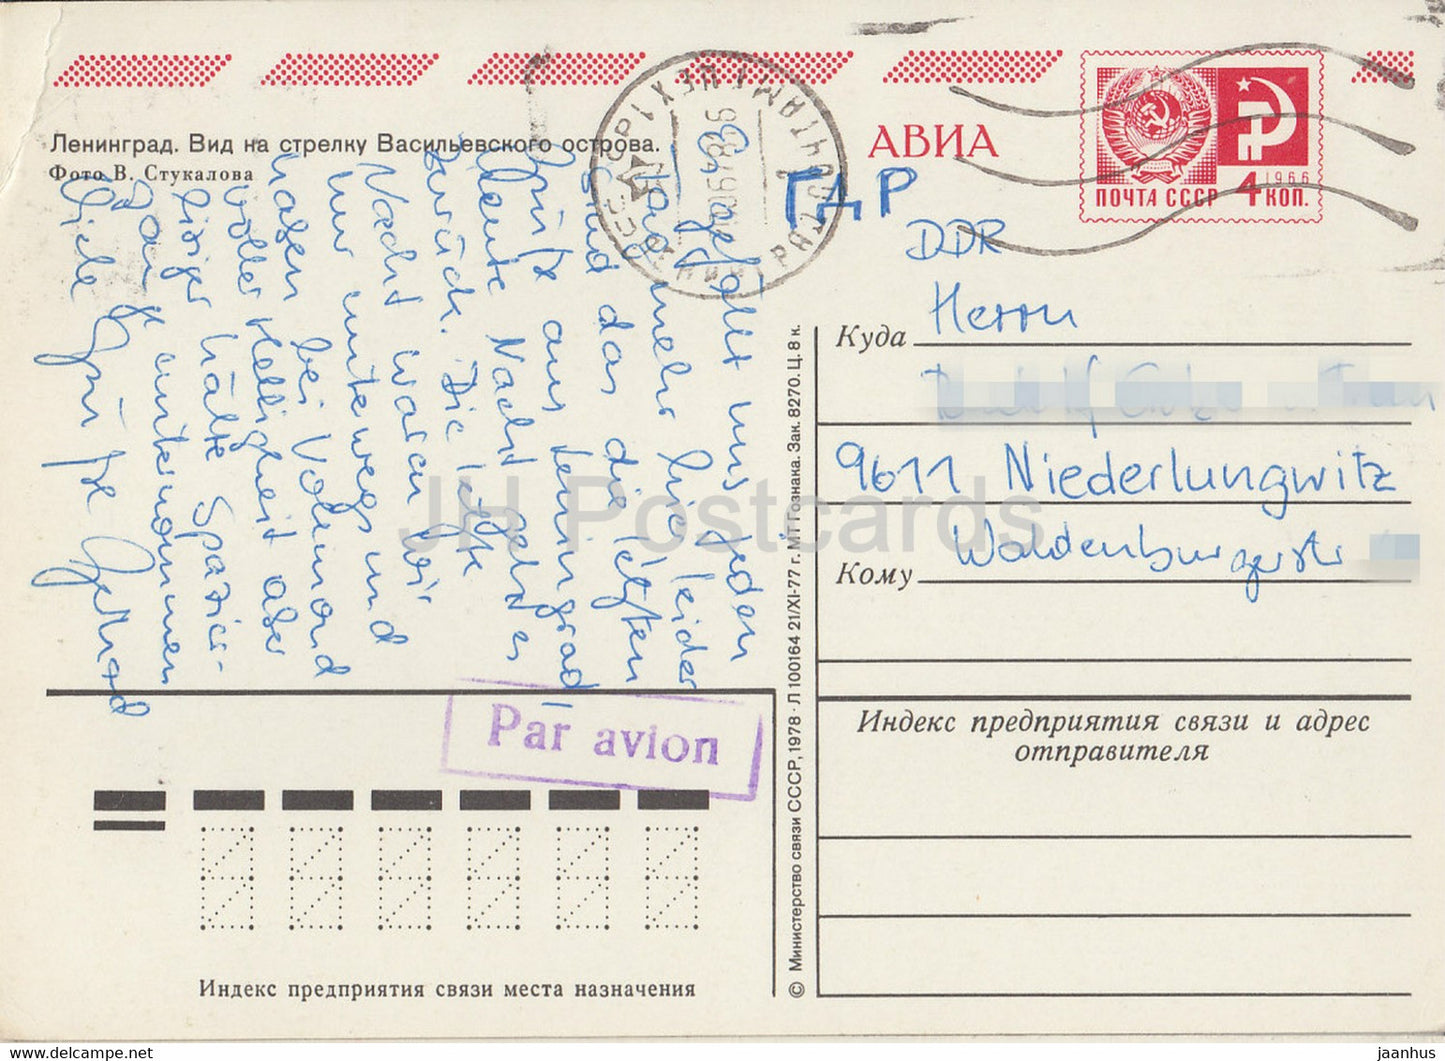 Leningrad - Saint-Pétersbourg - Vue de la flèche de l'île Vassilievski - entier postal - AVIA - Russie URSS - utilisé